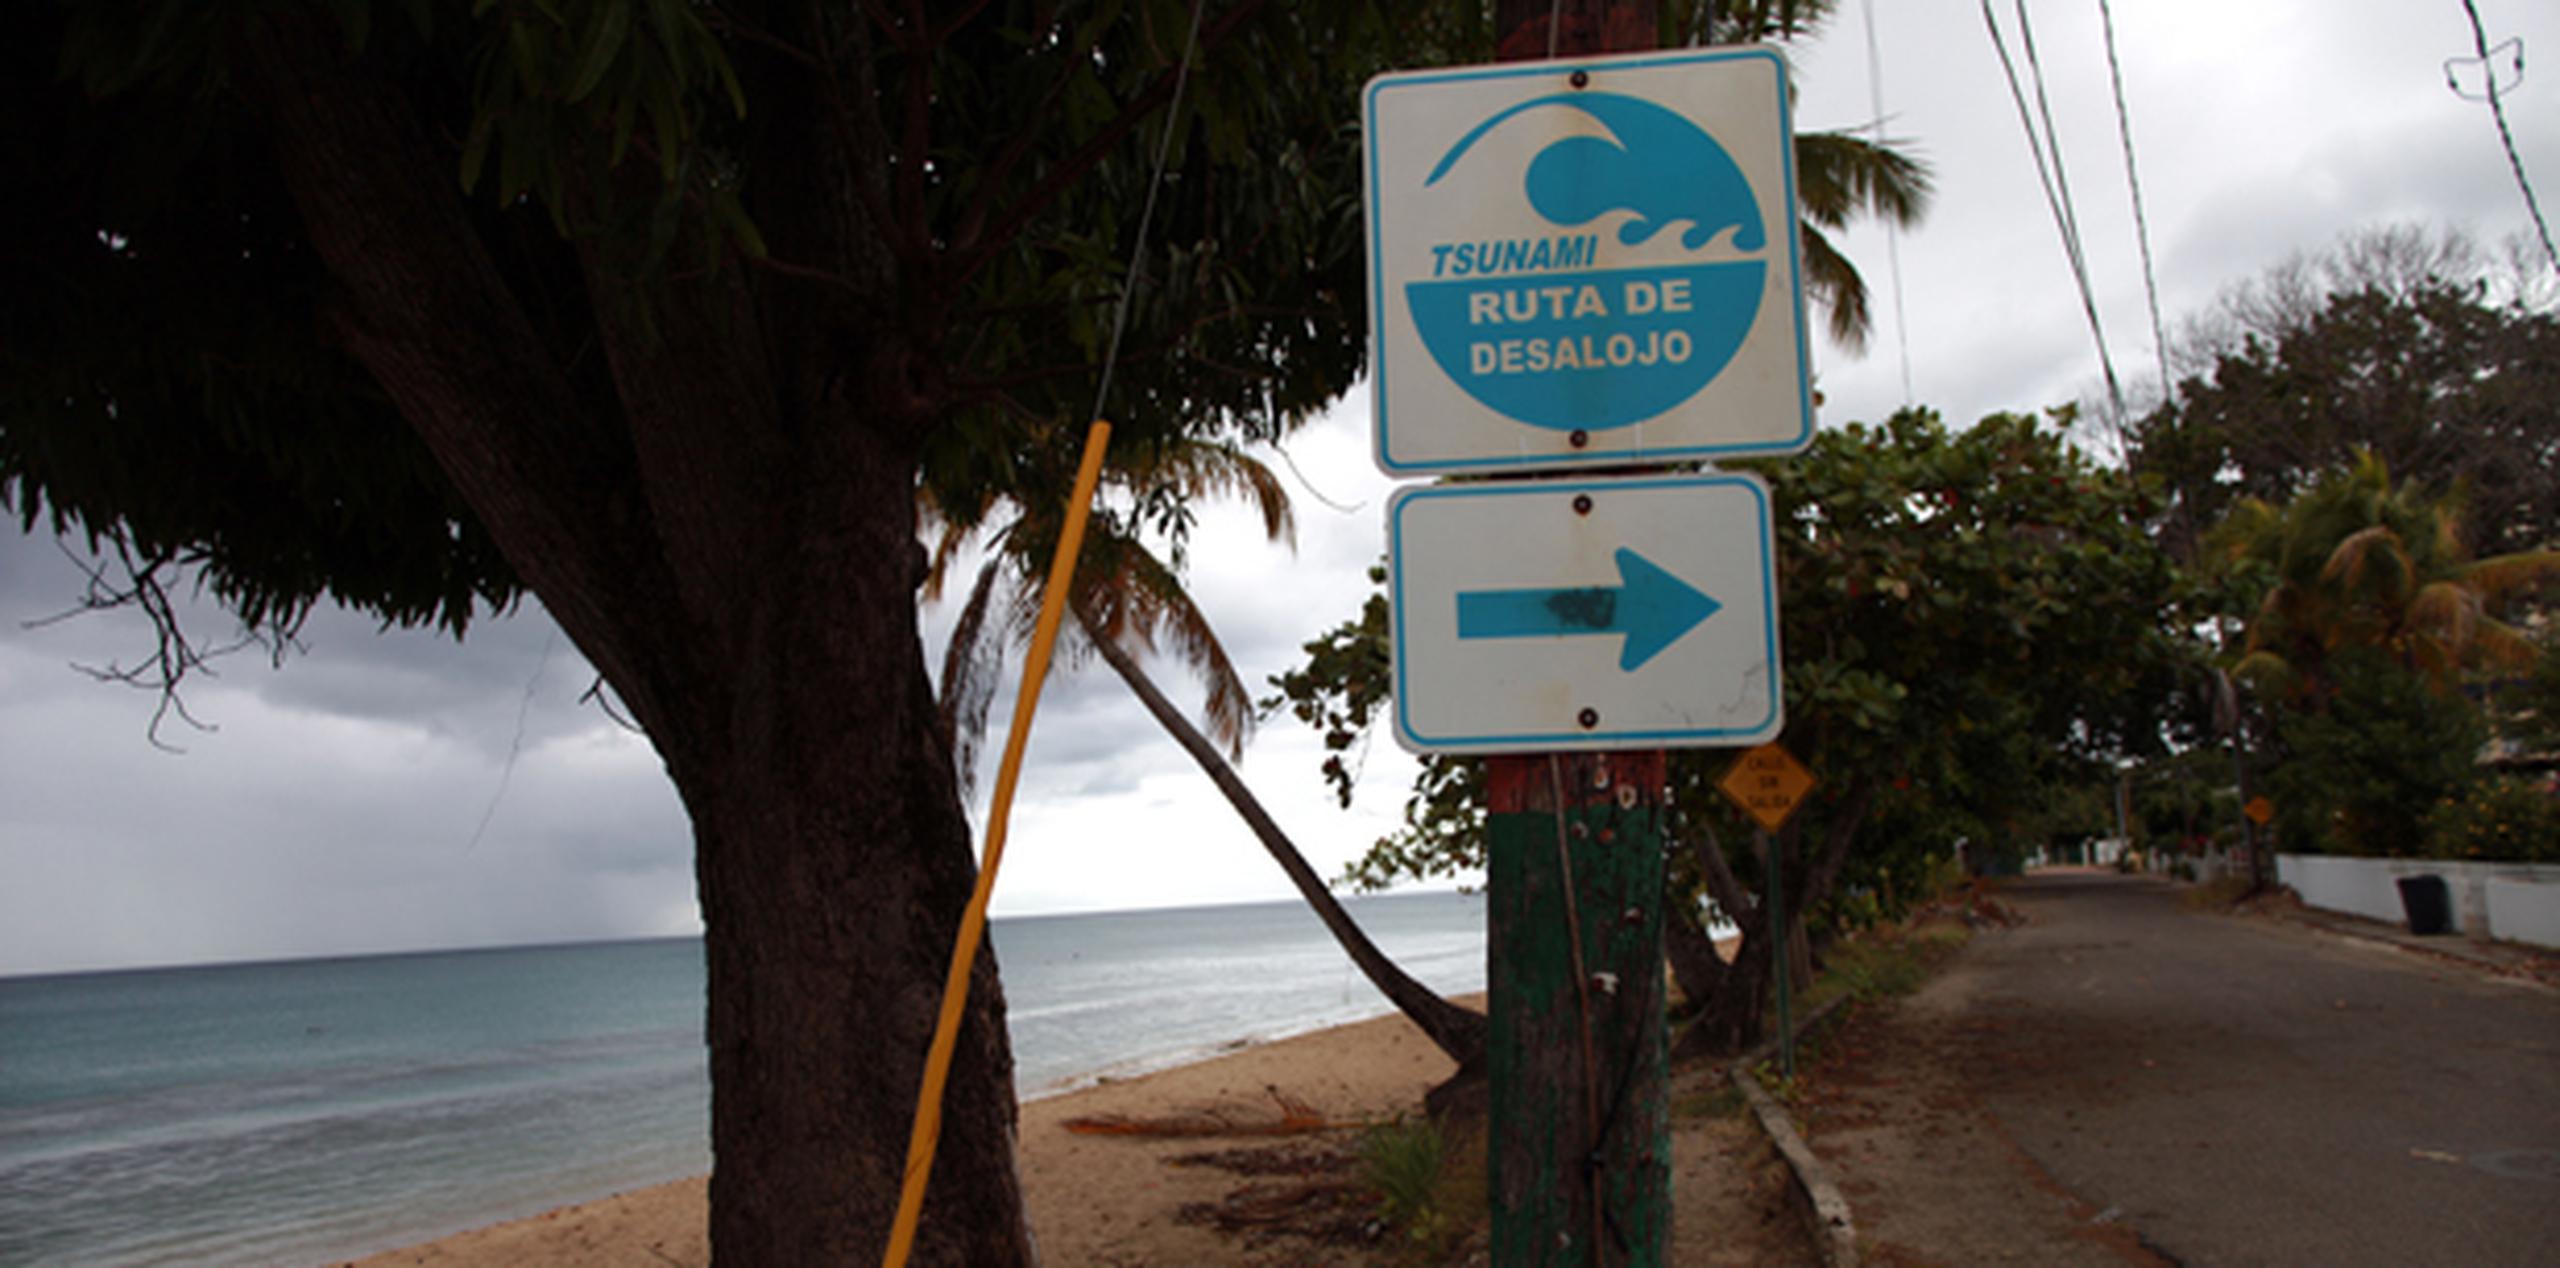 La Red Sísmica aprovechó para recordar que el próximo 26 de marzo, a las 6:00 de la mañana llevaran a cabo el ejercicio de tsunamis CARIBEWAVE/LANTEX 2014. (Archivo)
